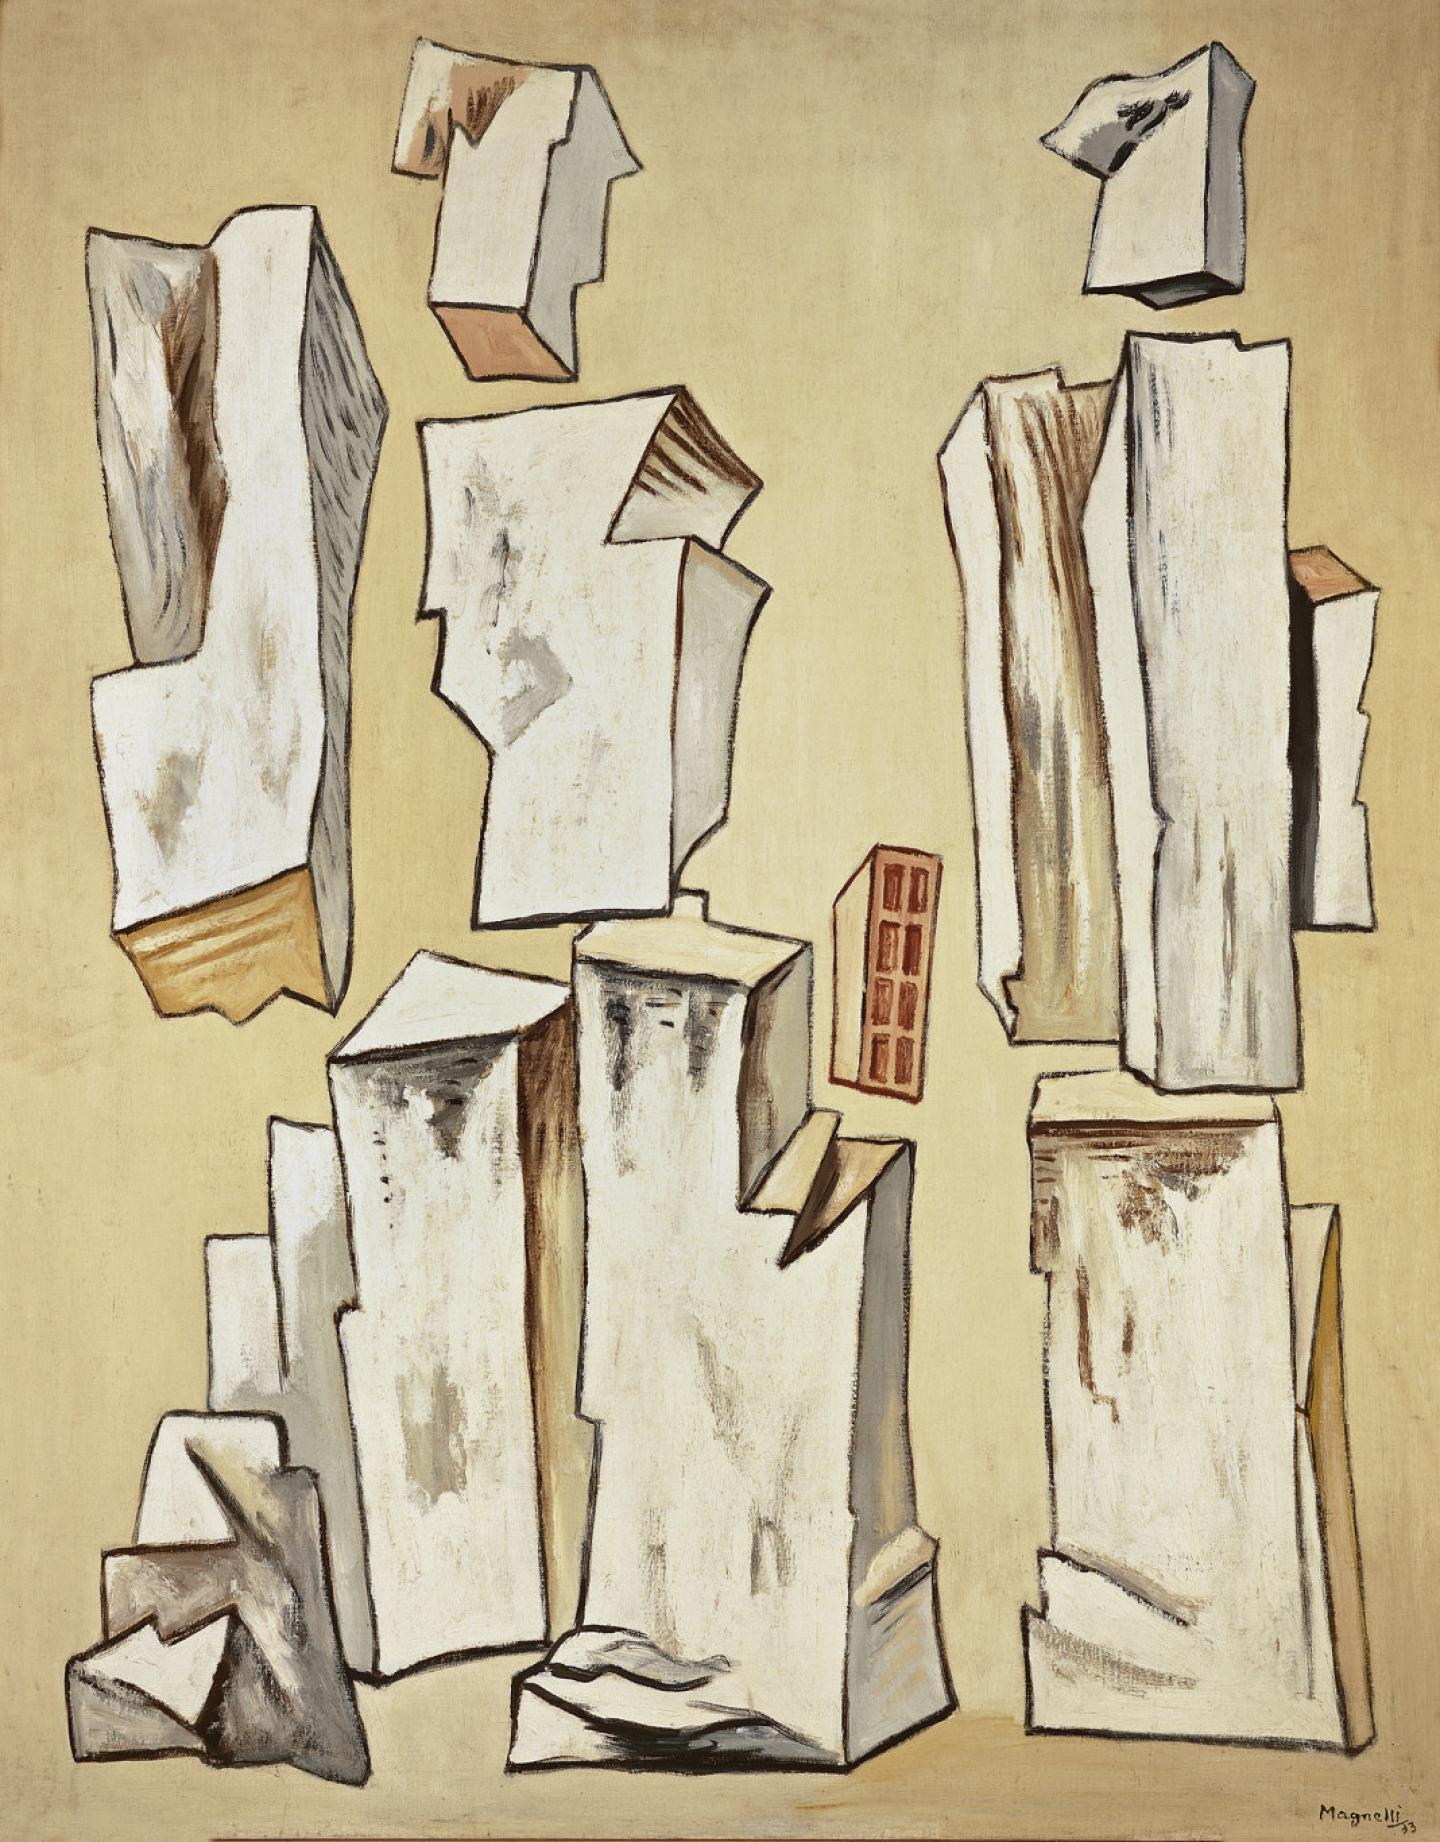 Magnelli, Pierres n° 1, 1933, huile sur toile, 116 x 89 cm